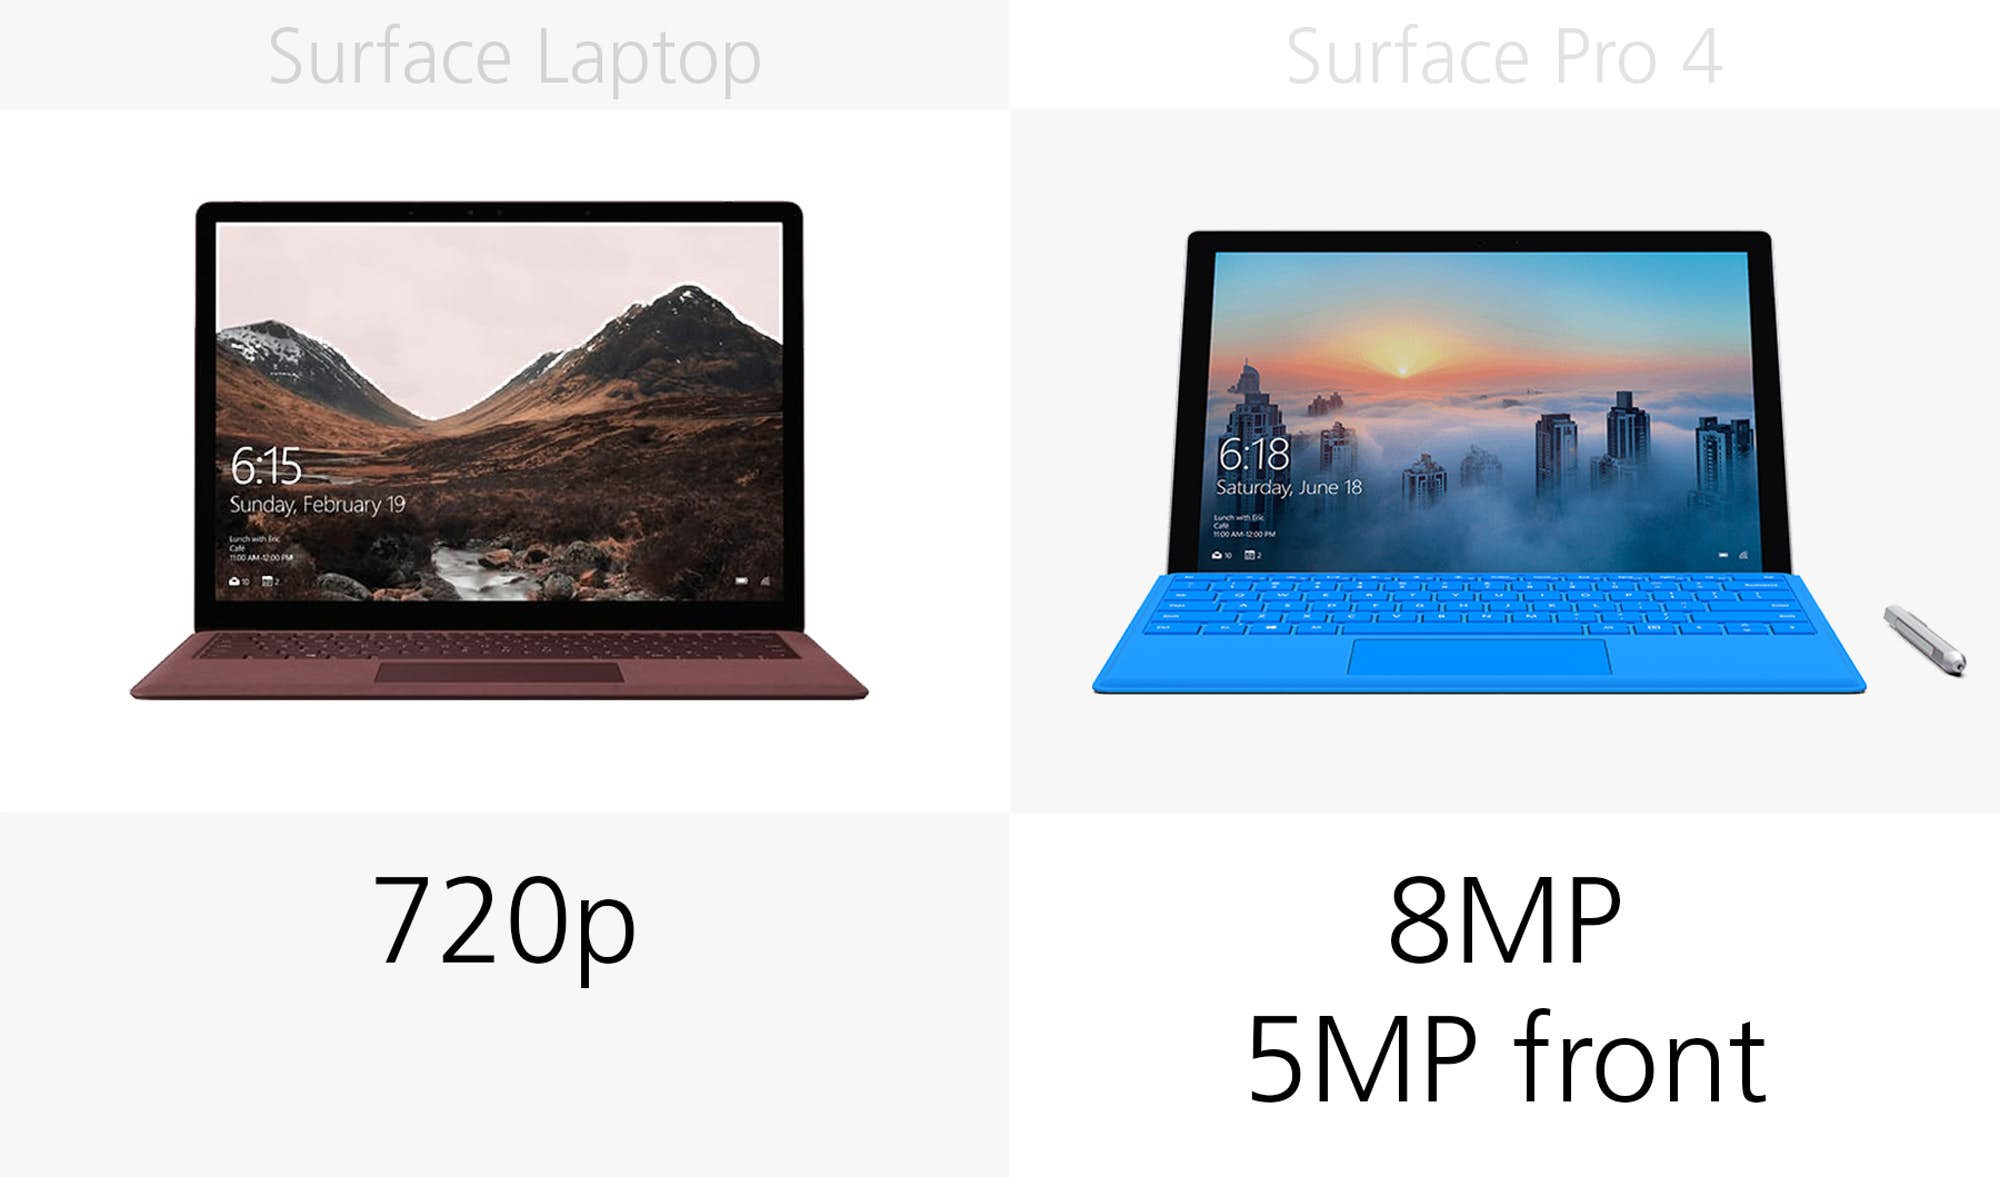 1493969711_microsoft-surface-laptop-vs-surface-pro-4-specs-comparison-5.jpg